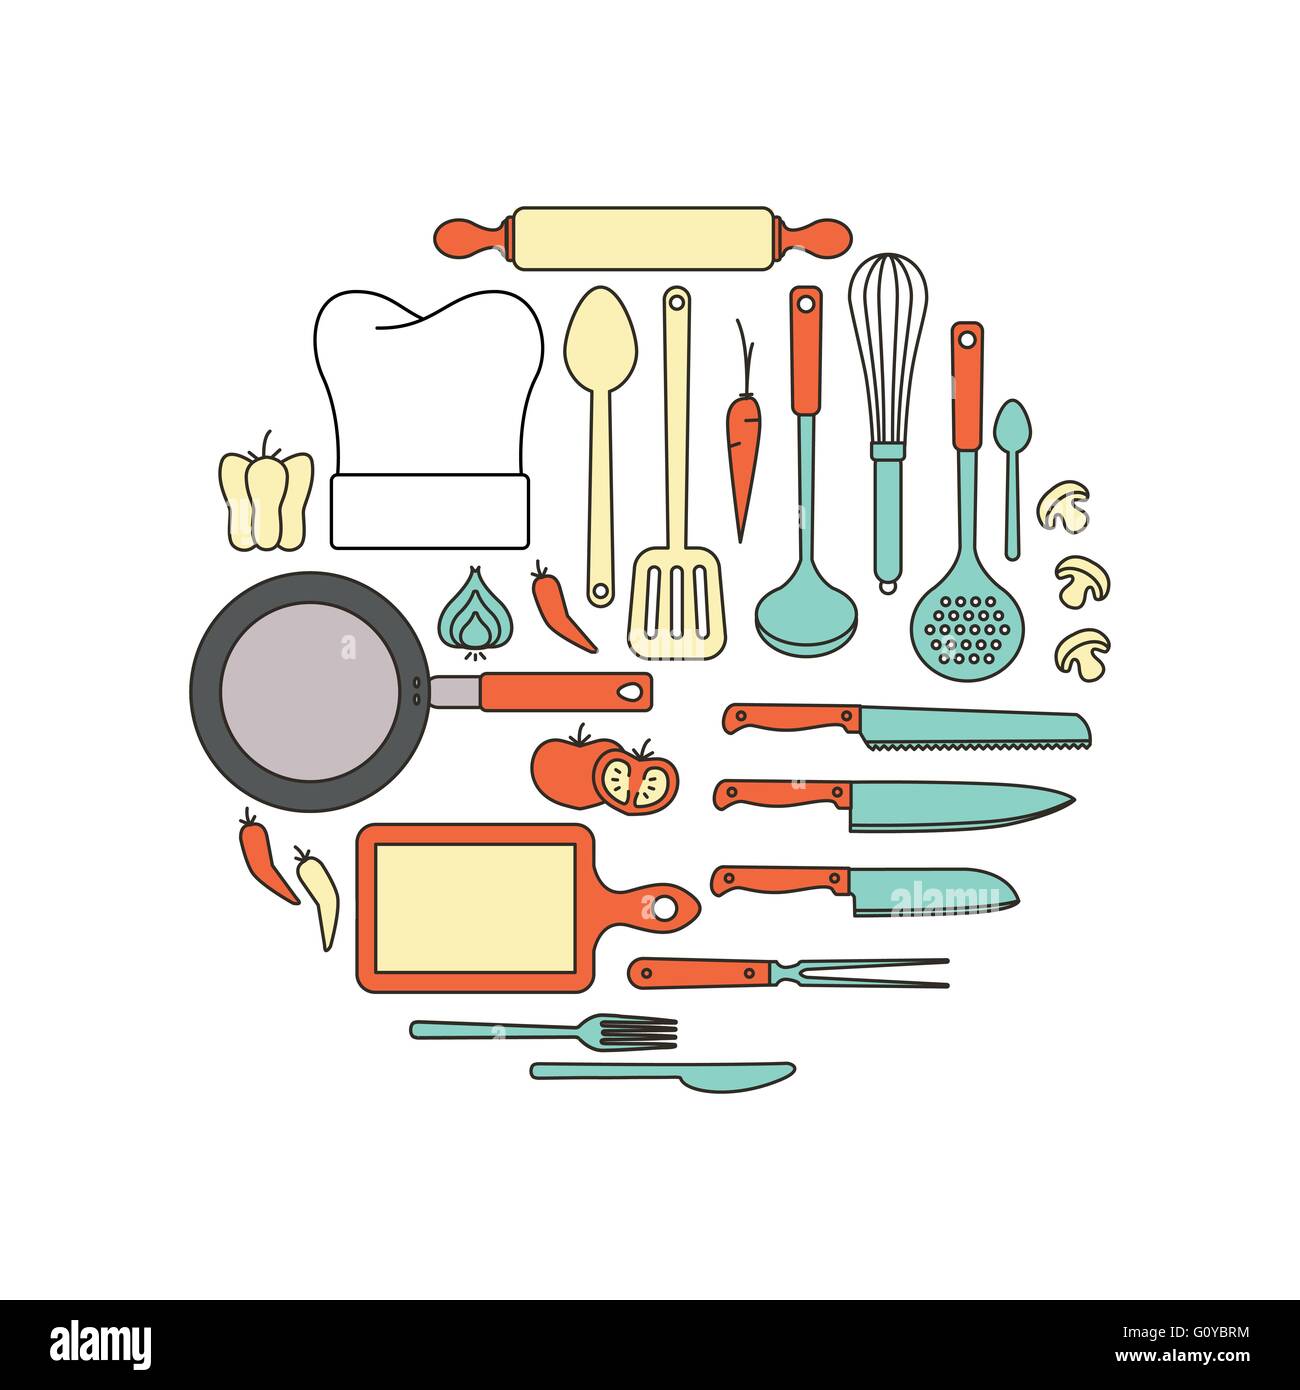 La cucina e le attrezzature di cottura, sottile linea di oggetti in una forma circolare su sfondo bianco Illustrazione Vettoriale